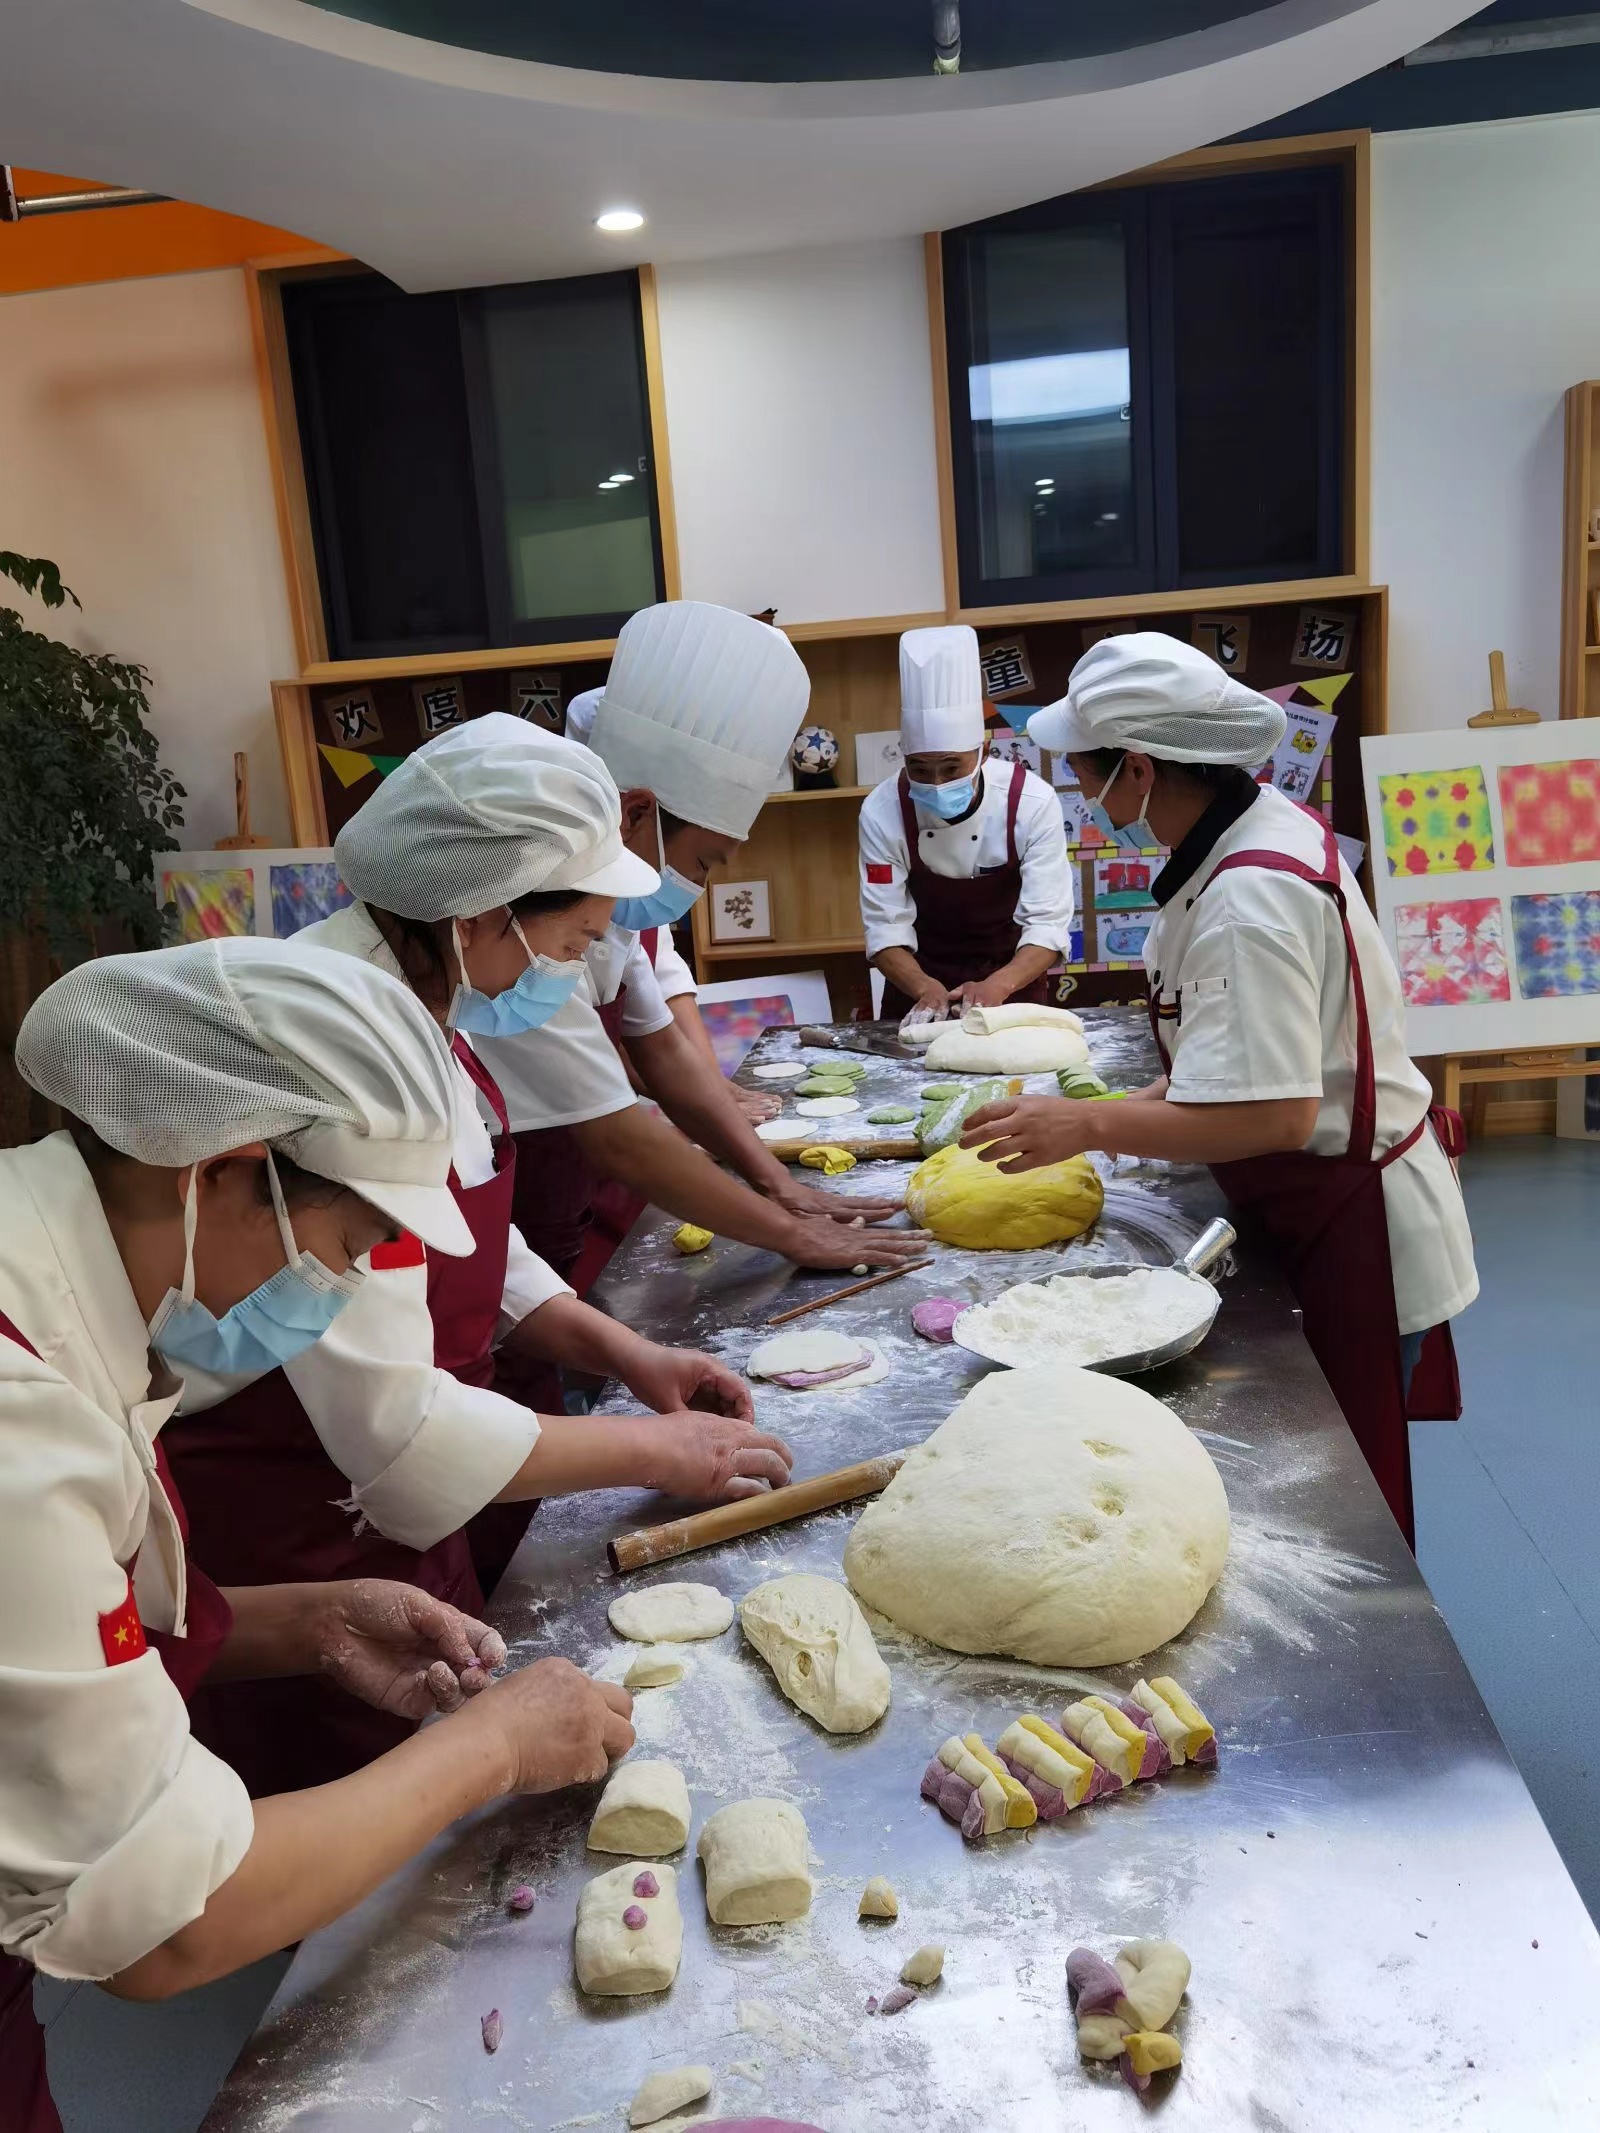 重庆市黔江区妇联幼儿园 “美食面点秀”厨艺比赛情况